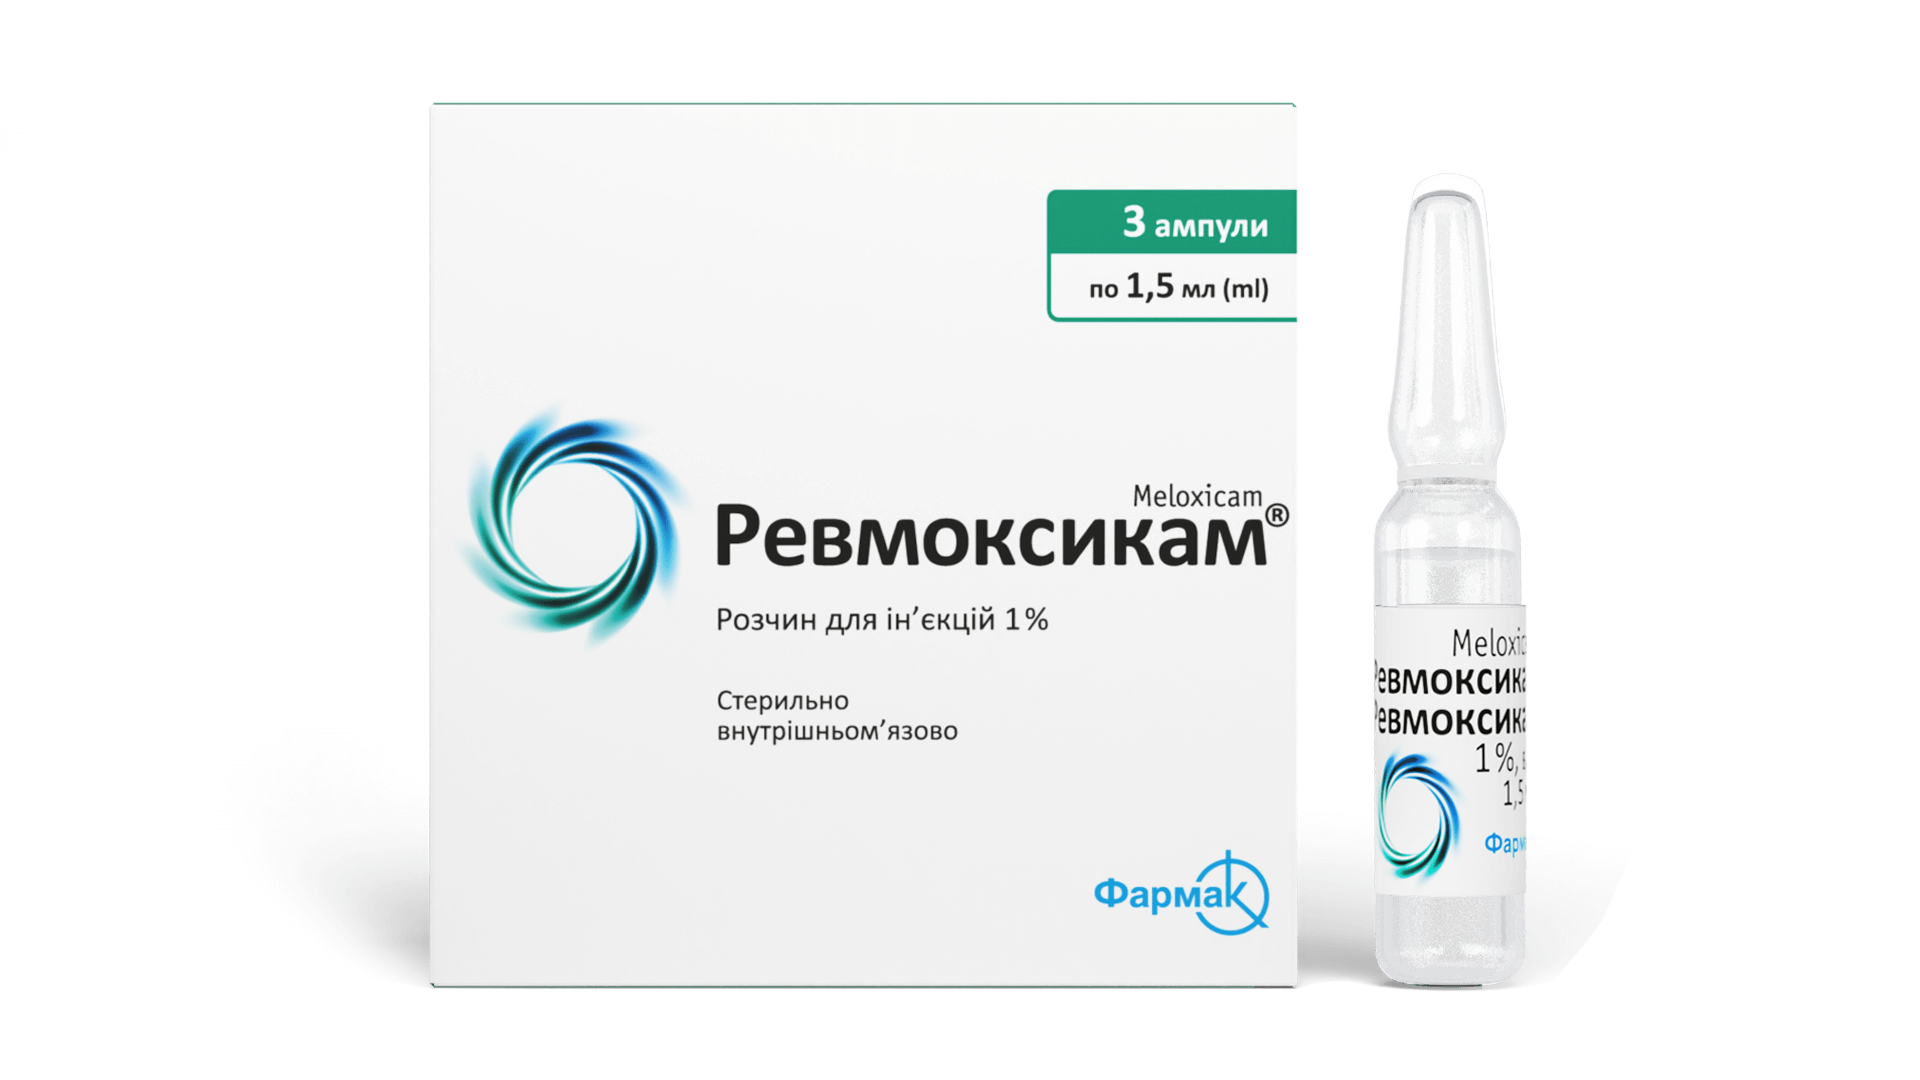 Ревмоксикам® (раствор) (2)